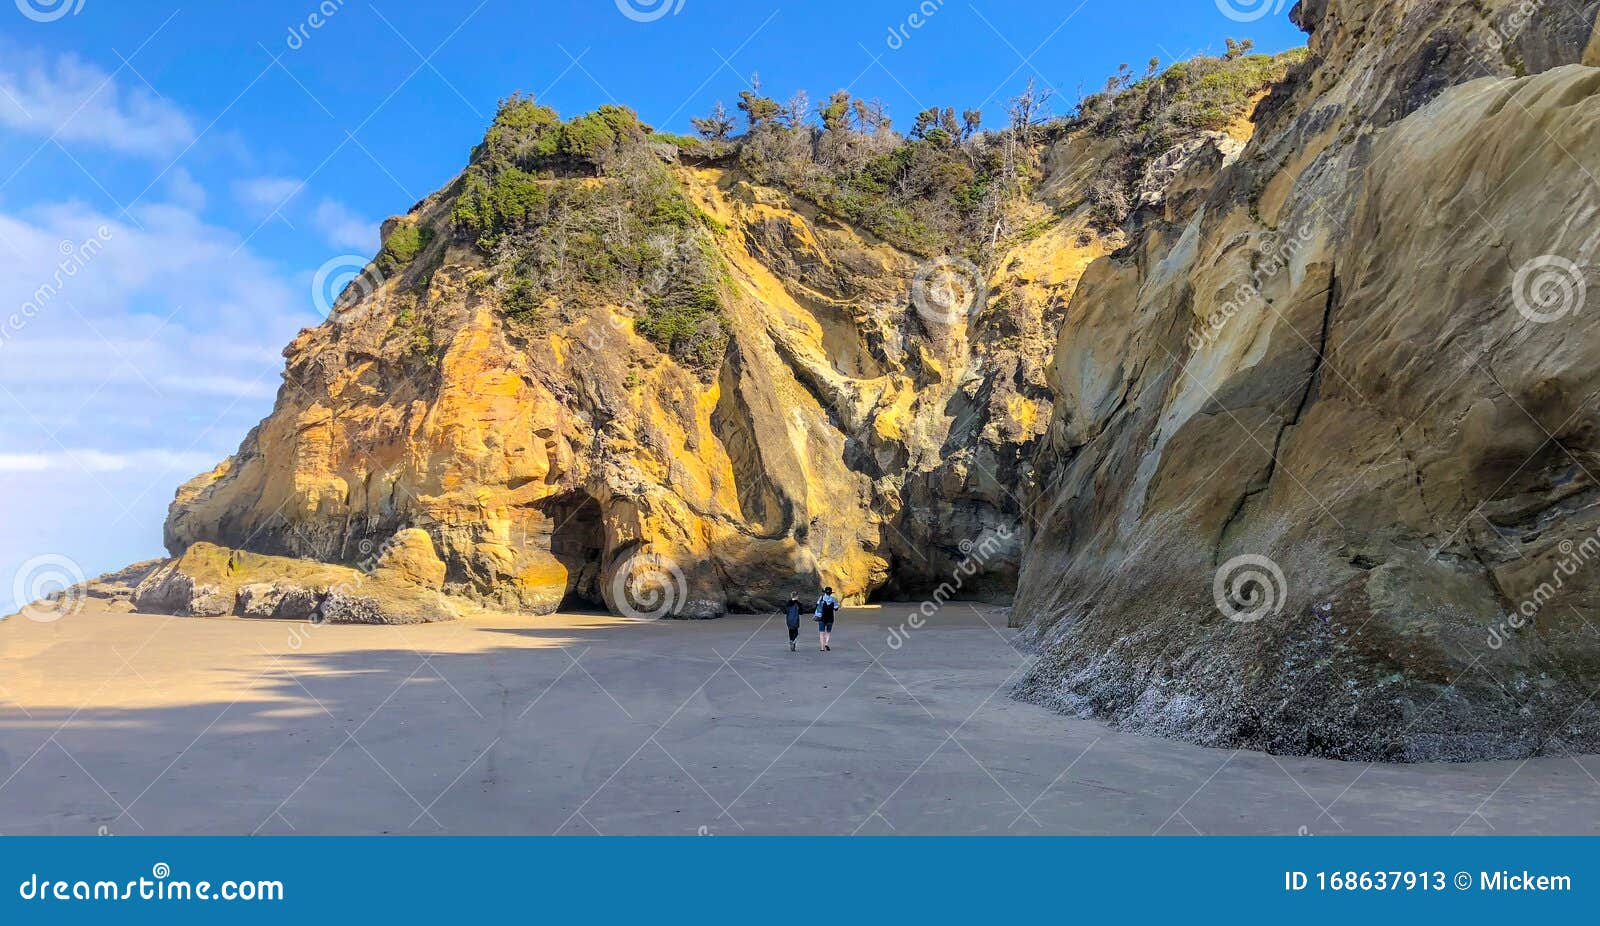 hug point beach oregon usa cave entrances